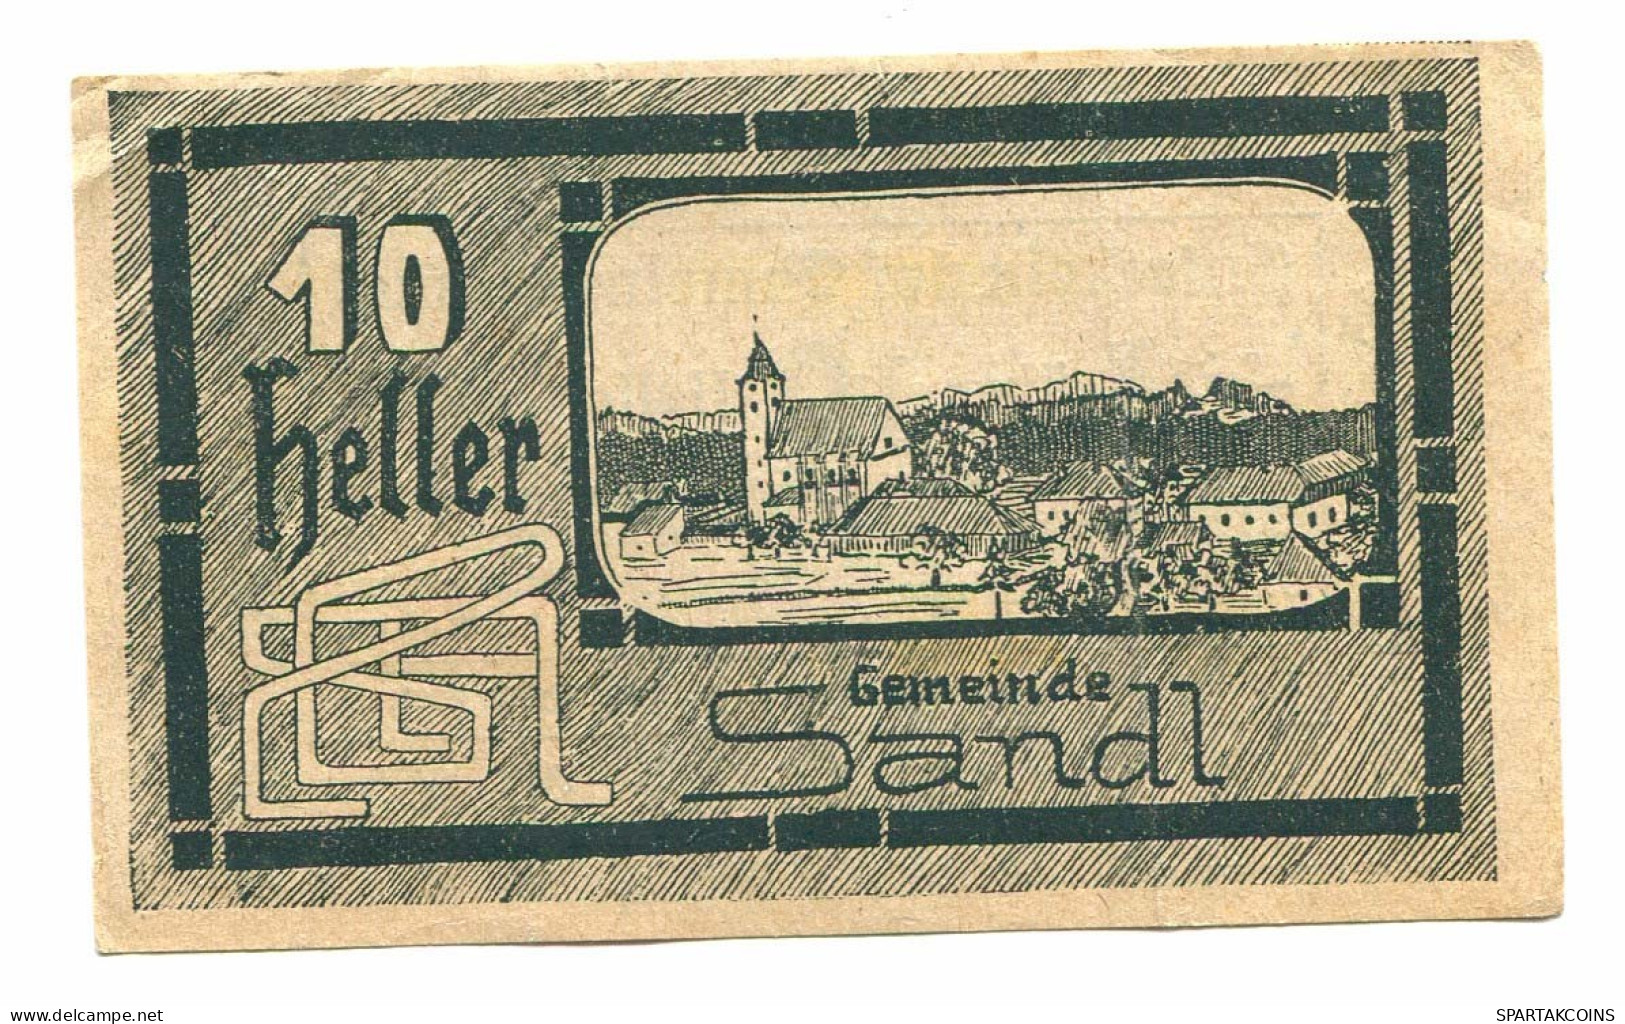 10 Heller 1920 SANDL Österreich UNC Notgeld Papiergeld Banknote #P10683 - [11] Local Banknote Issues